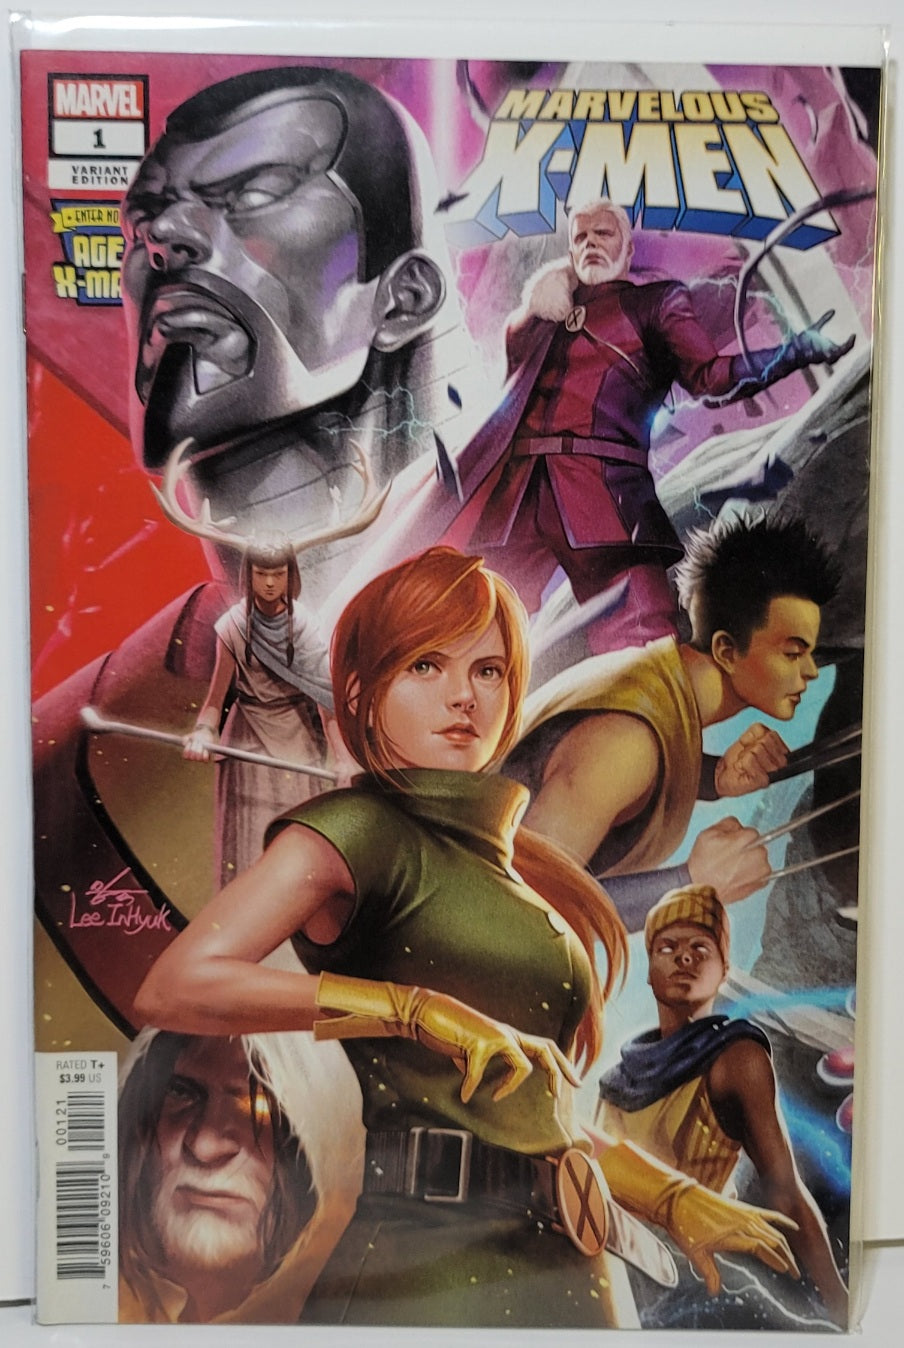 Marvelous X-Men 1st Issue Marvel Comics